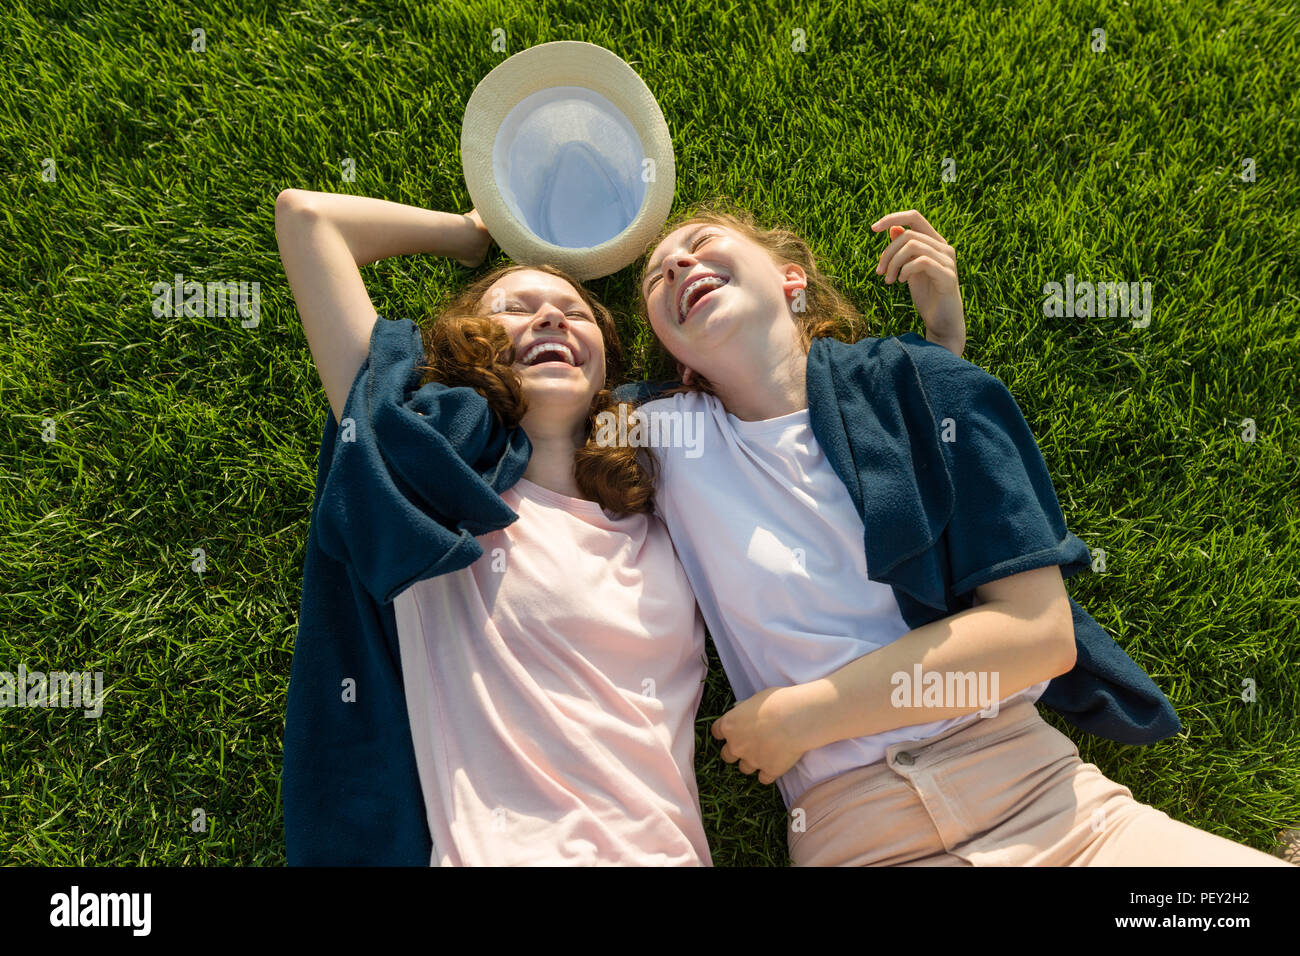 Las niñas adolescentes divirtiéndose, recostarse sobre la hierba verde, riendo, vista superior Foto de stock